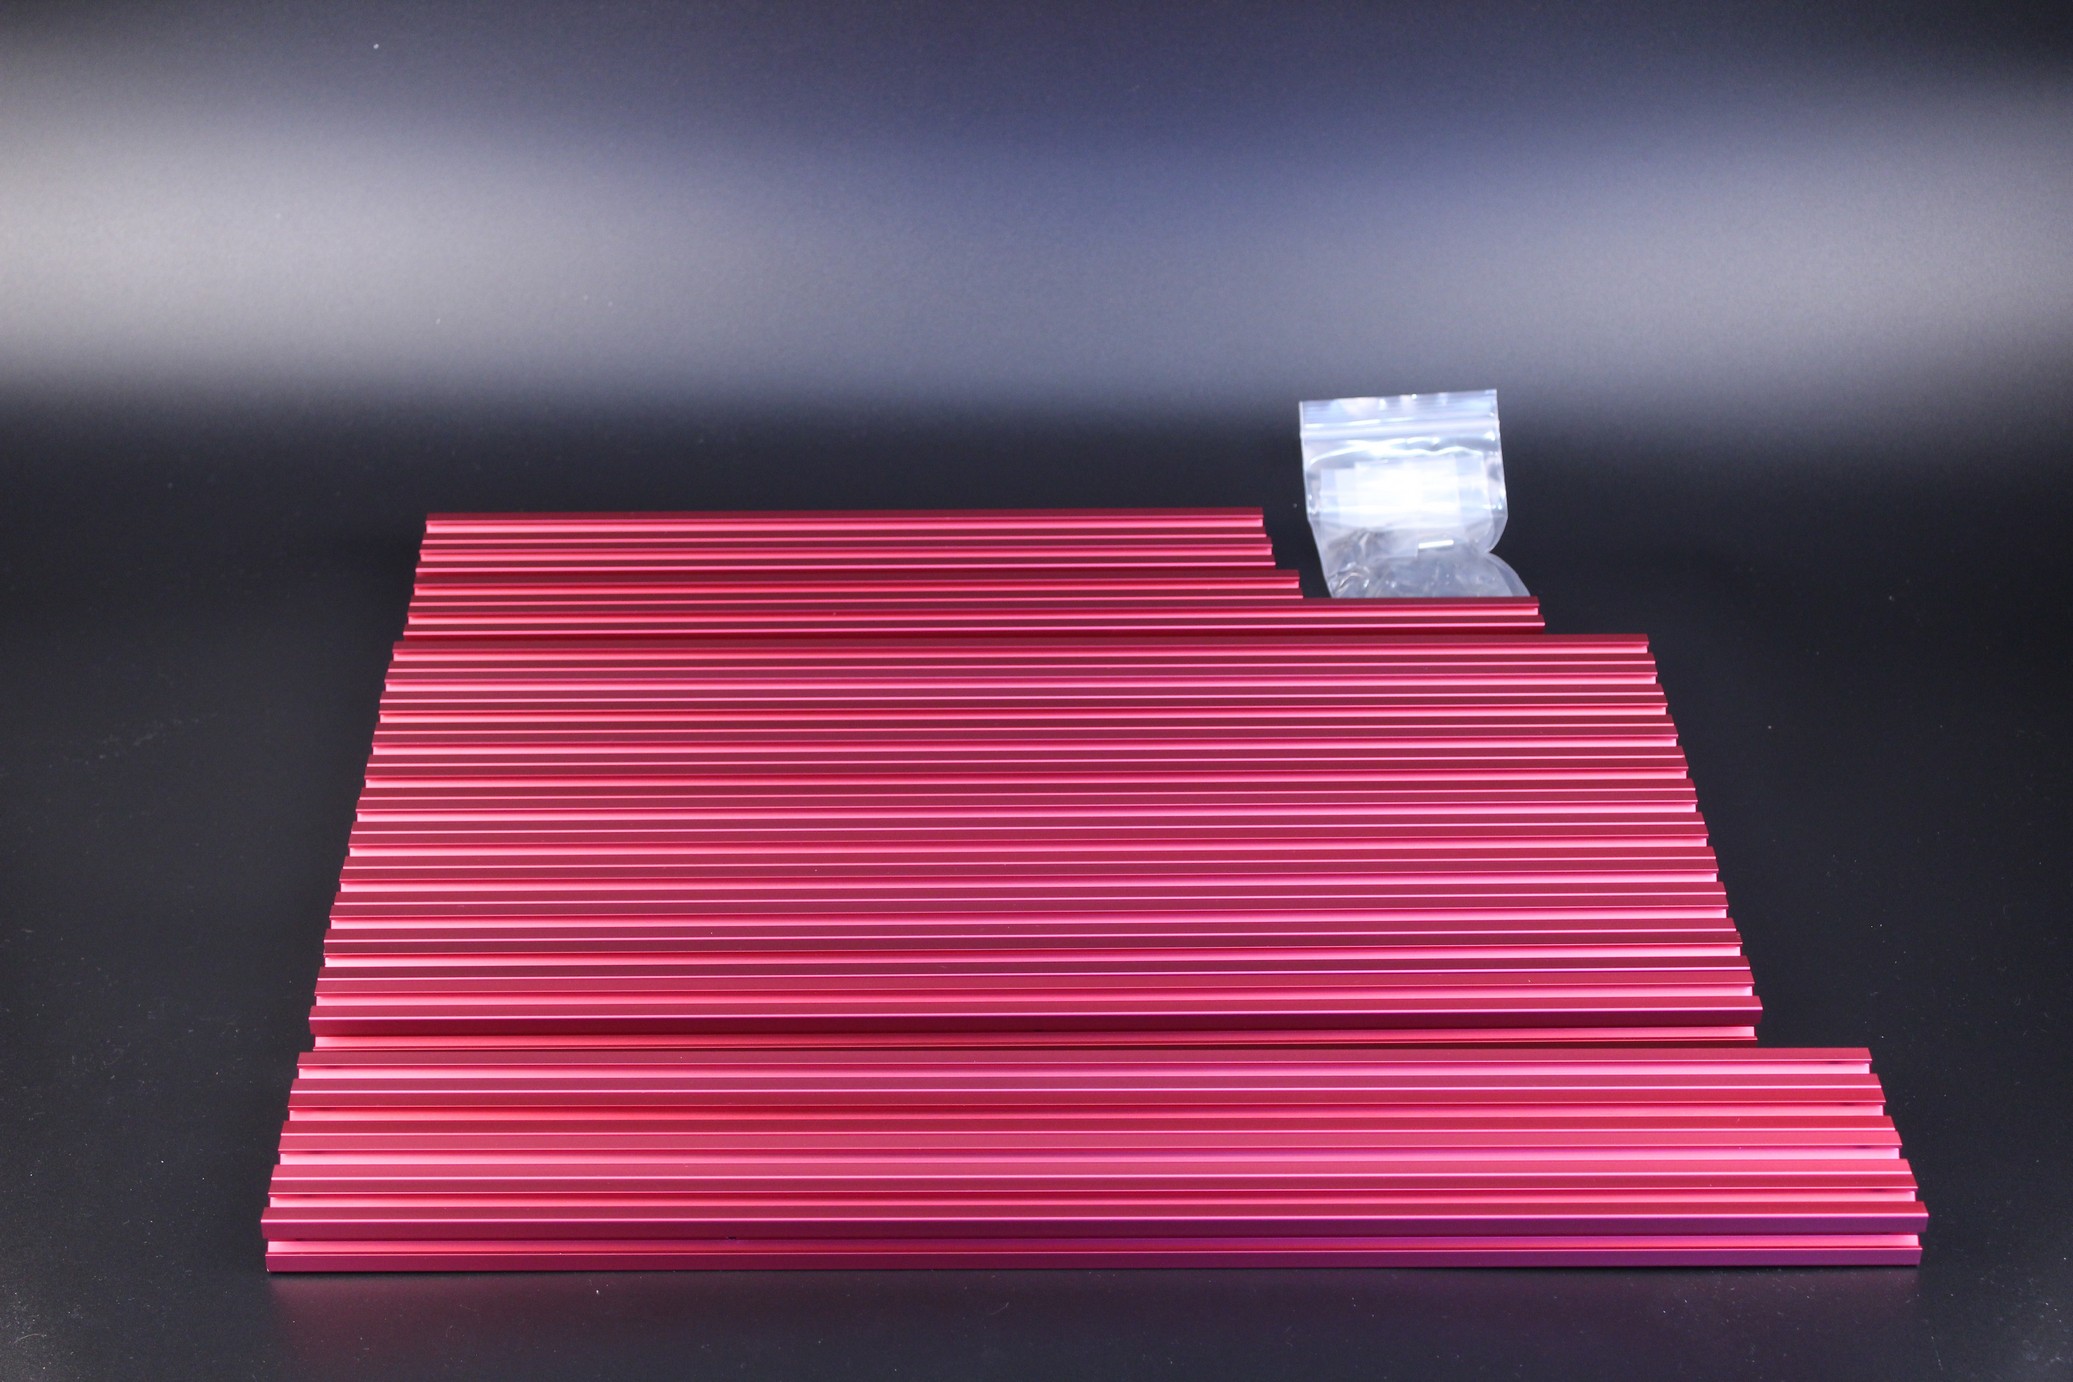 FYSETC Voron Trident Kit Red Anodized Aluminum Profiles 5 | VORON Trident FYSETC Kit Review: Is it worth it?